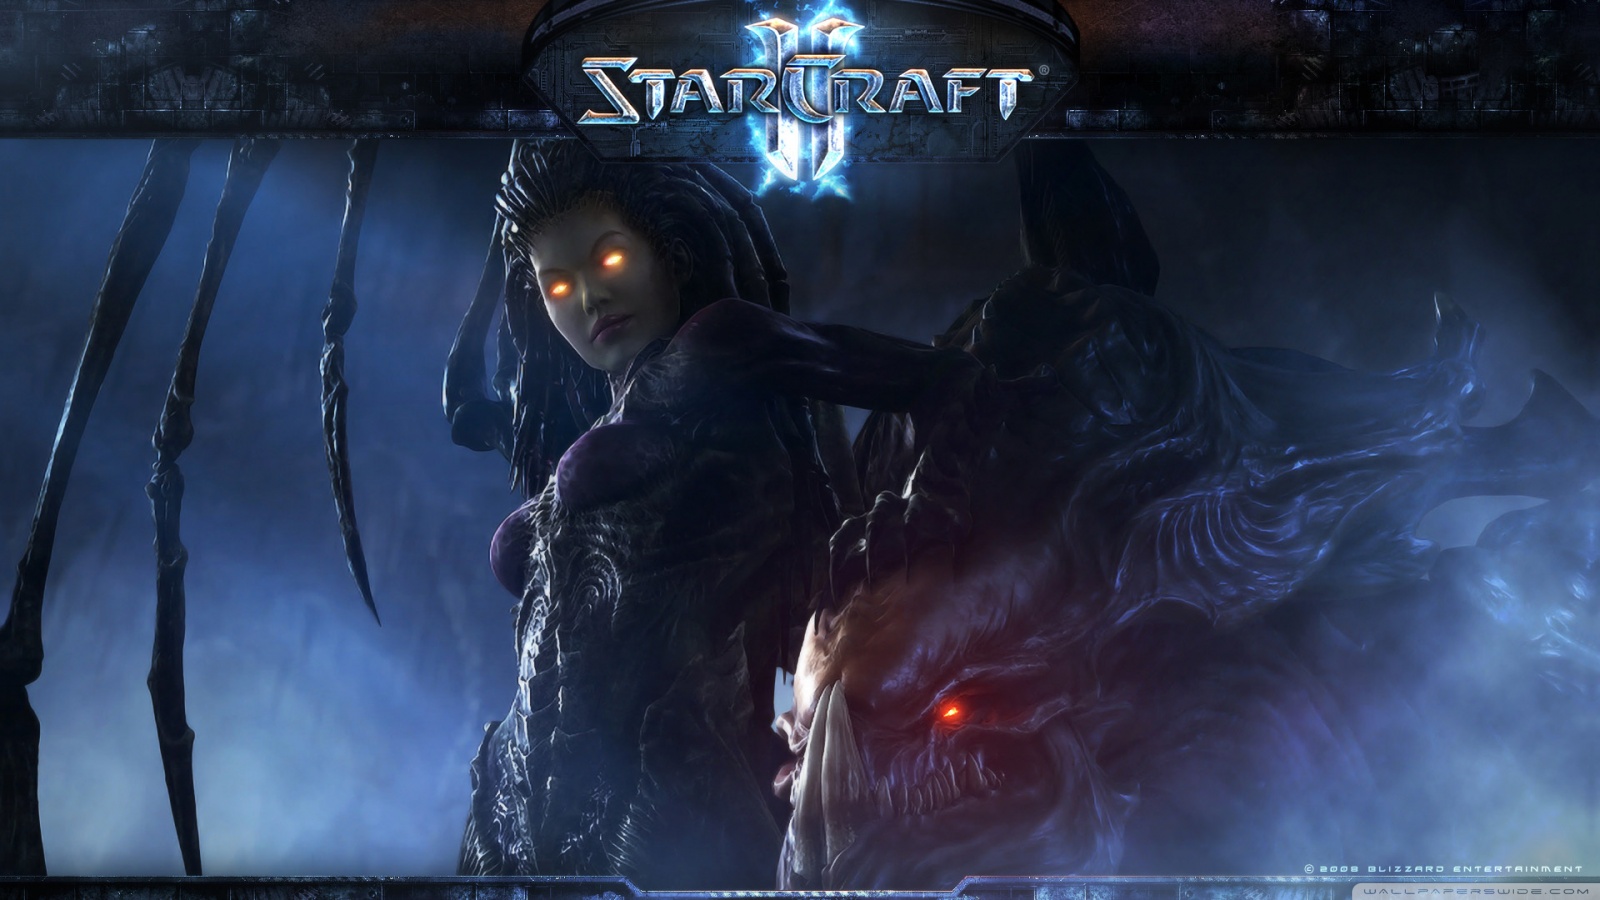 Starcraft2 Wallpaper Heroes